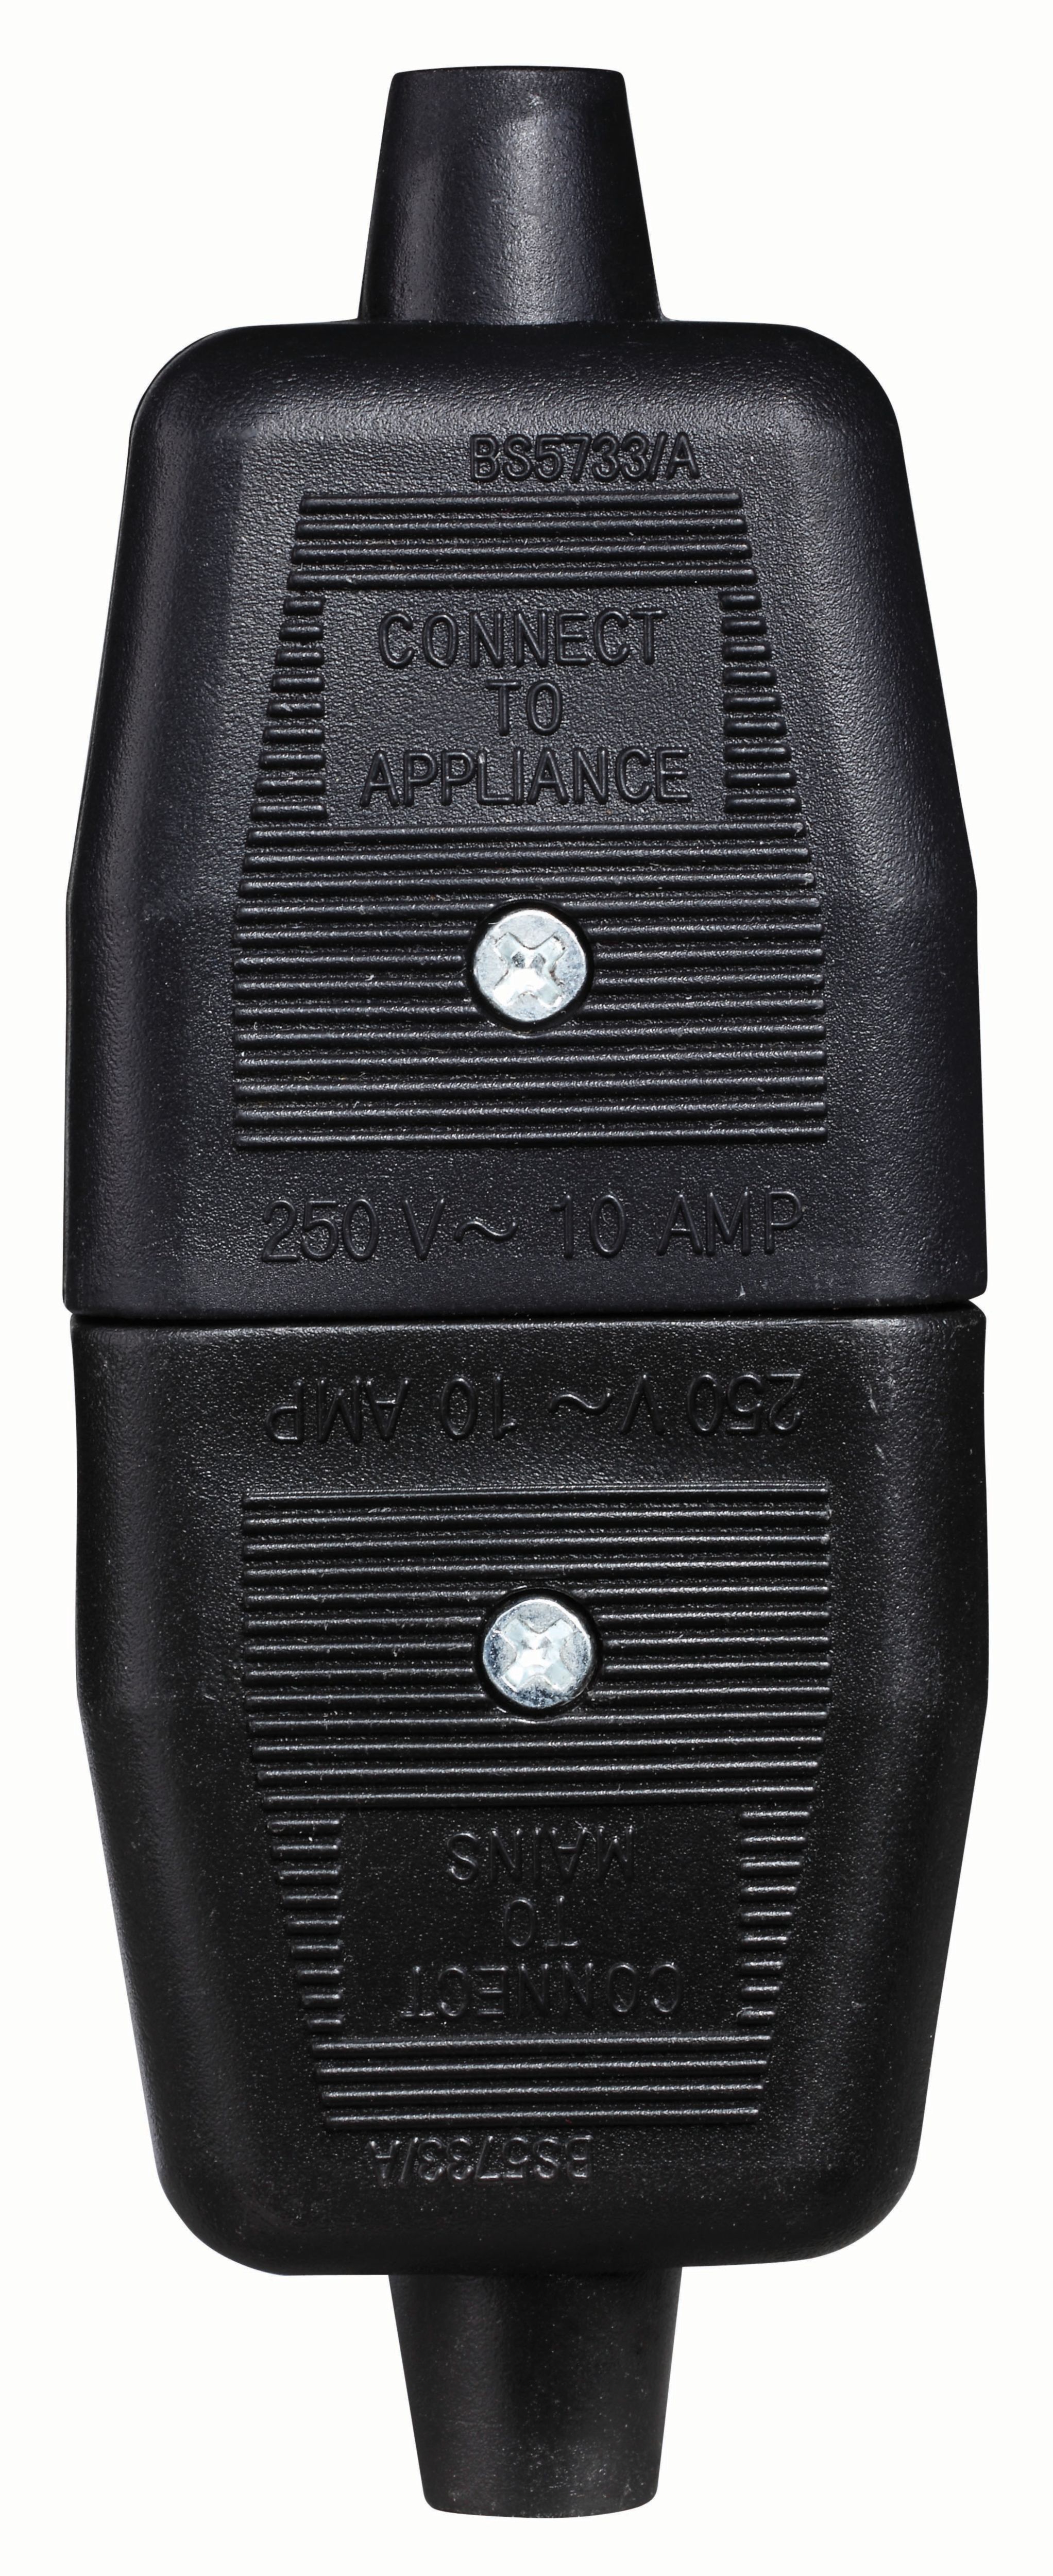 Masterplug 10A 3 Pin Non-Reversible Connector - Black